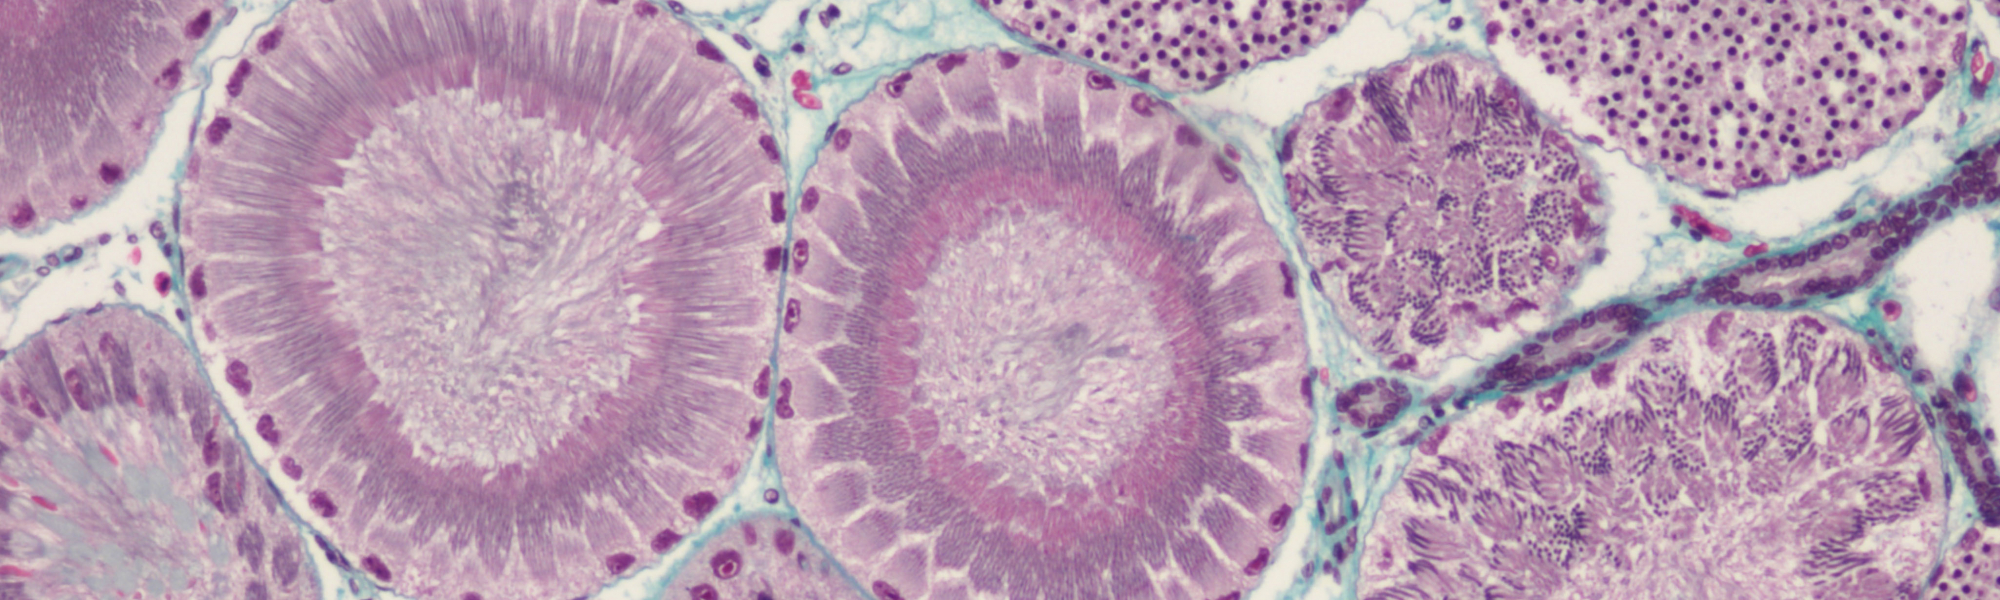 Coupe histologique d’un testicule de roussette, Scyliorhinus canicula, illustrant des stades de la spermatogenèse - P. Sourdaine